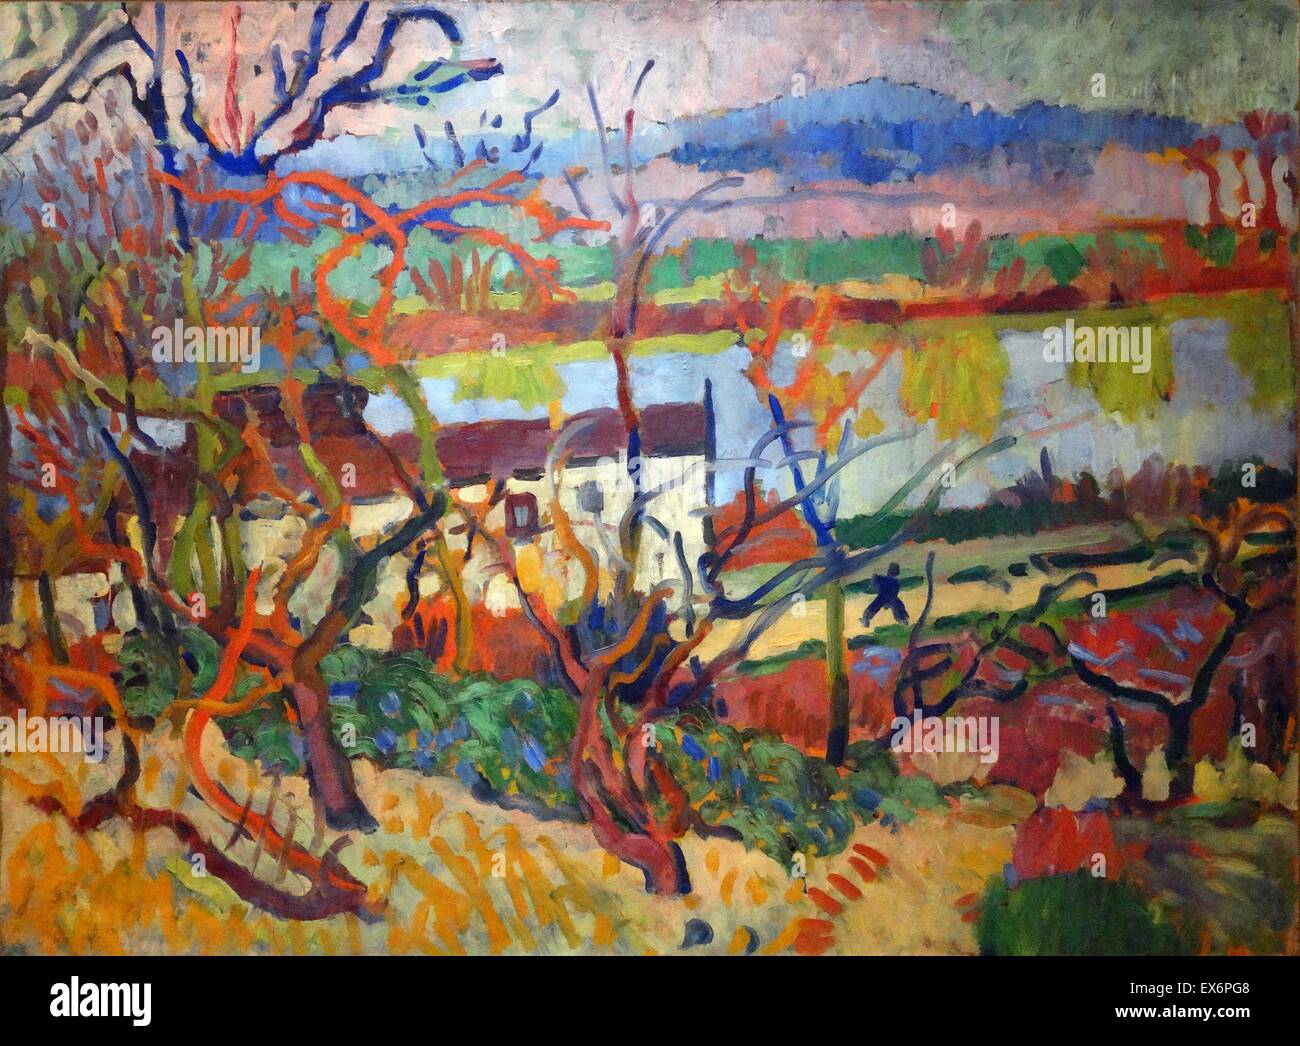 La peinture intitulée 'La Rivière' par André Derain (1880-1954) artiste français, peintre, sculpteur et co-fondateur du Fauvisme avec Henri Matisse. Datée 1905 Banque D'Images